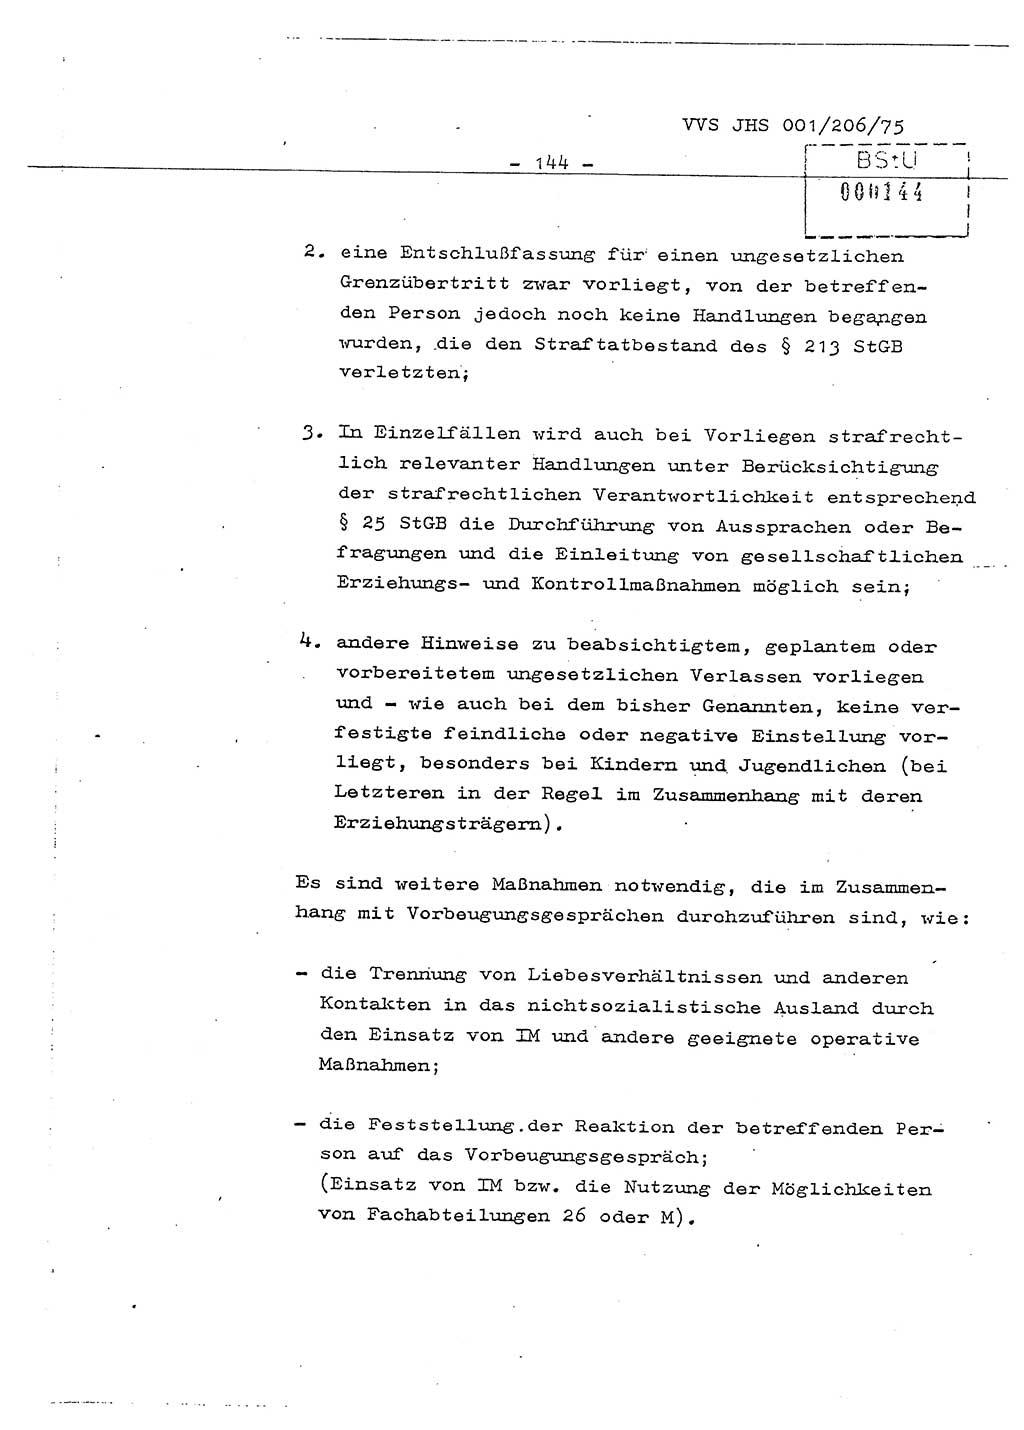 Dissertation Generalmajor Manfred Hummitzsch (Leiter der BV Leipzig), Generalmajor Heinz Fiedler (HA Ⅵ), Oberst Rolf Fister (HA Ⅸ), Ministerium für Staatssicherheit (MfS) [Deutsche Demokratische Republik (DDR)], Juristische Hochschule (JHS), Vertrauliche Verschlußsache (VVS) 001-206/75, Potsdam 1975, Seite 144 (Diss. MfS DDR JHS VVS 001-206/75 1975, S. 144)